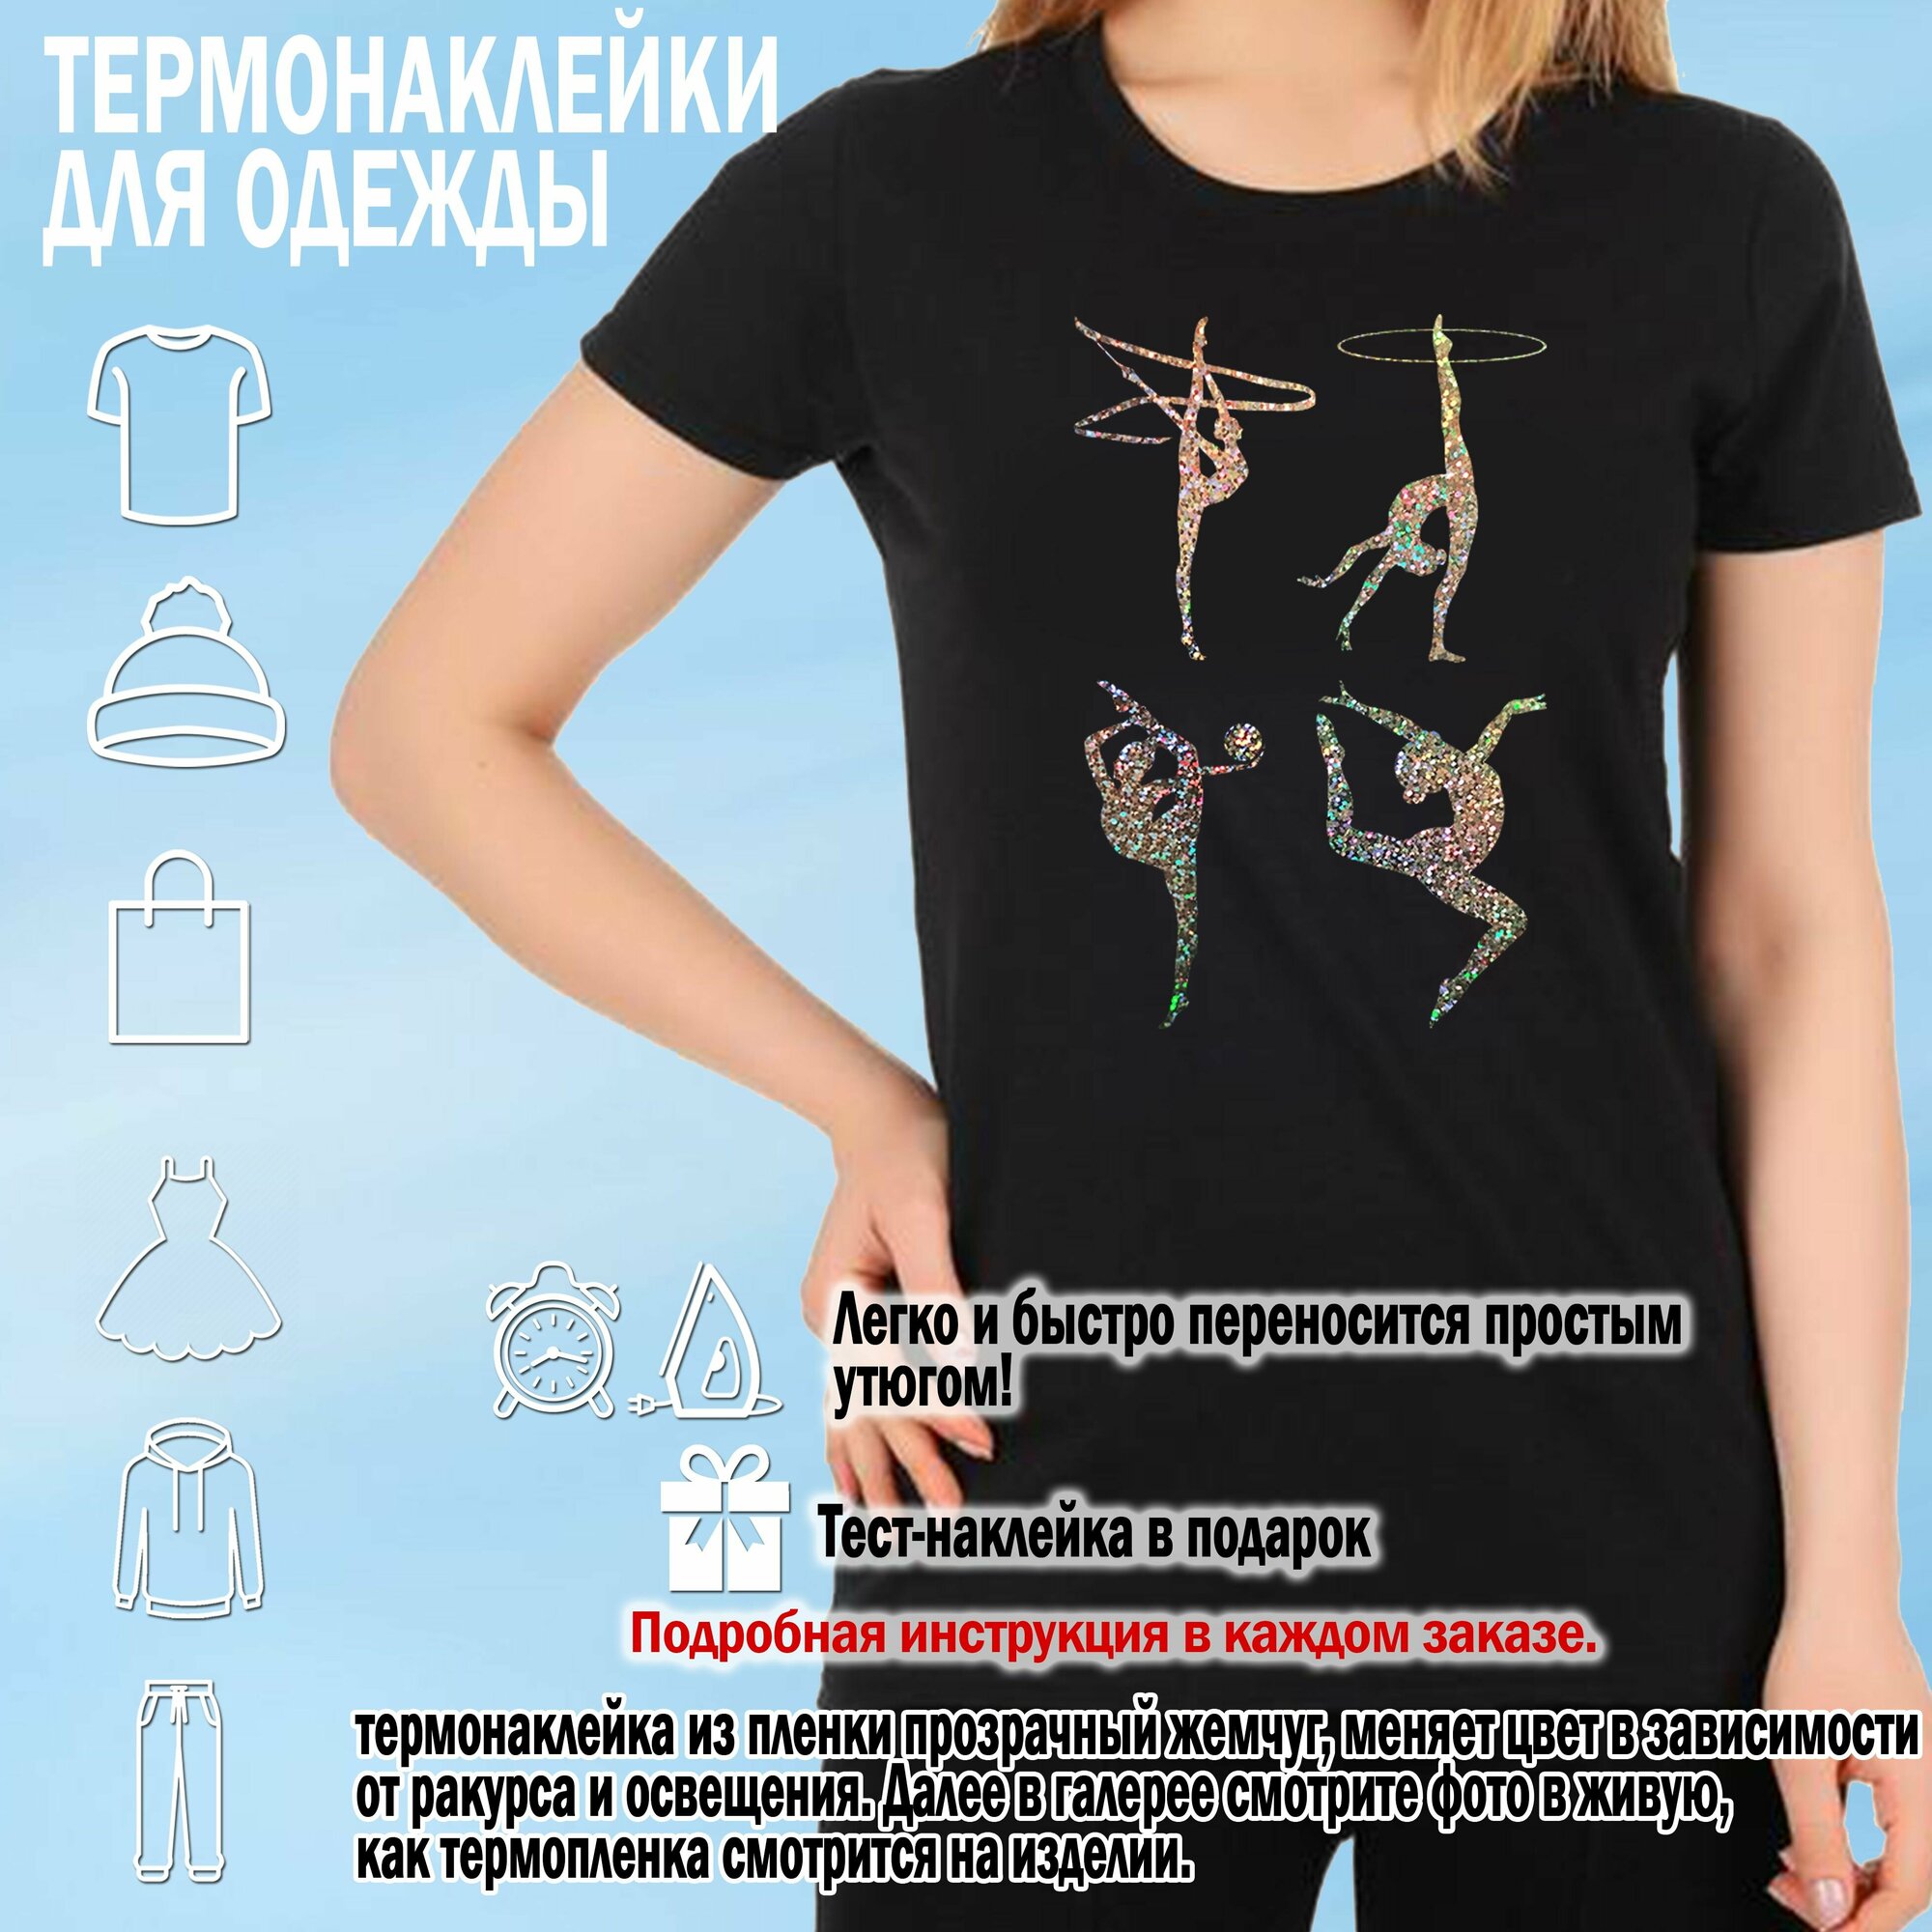 Набор термонаклеек на одежду для гимнастки, "Художественная гимнастика" , серебряный голографик, 20х14 см.